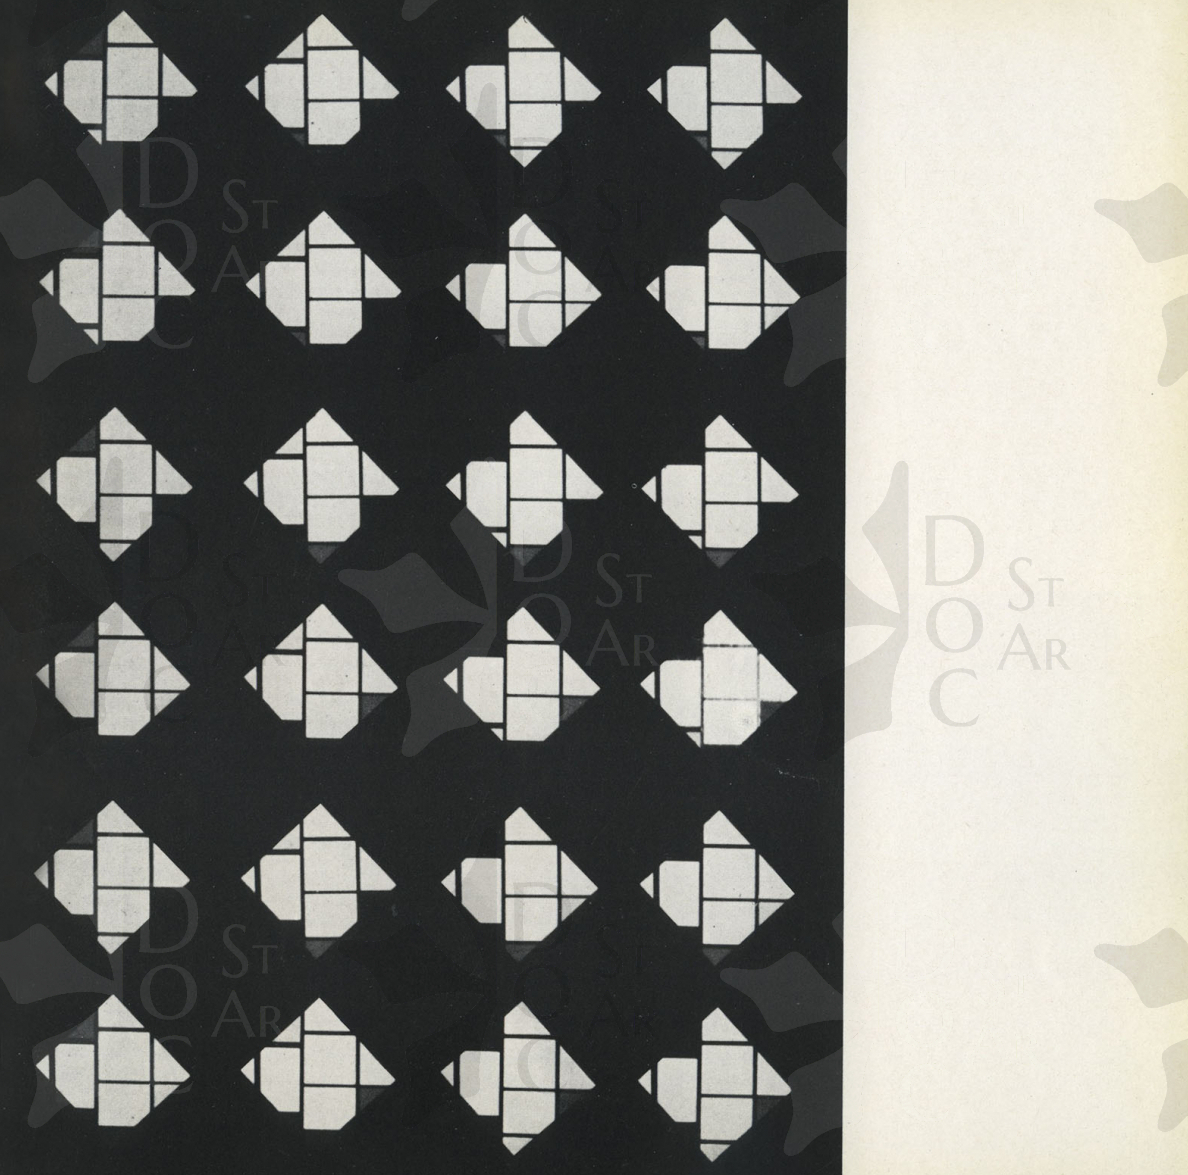 Immagine 1-9023719 Tutte le possibili permutazioni (senza ripetizioni) di quattro elementi (Mondrian)